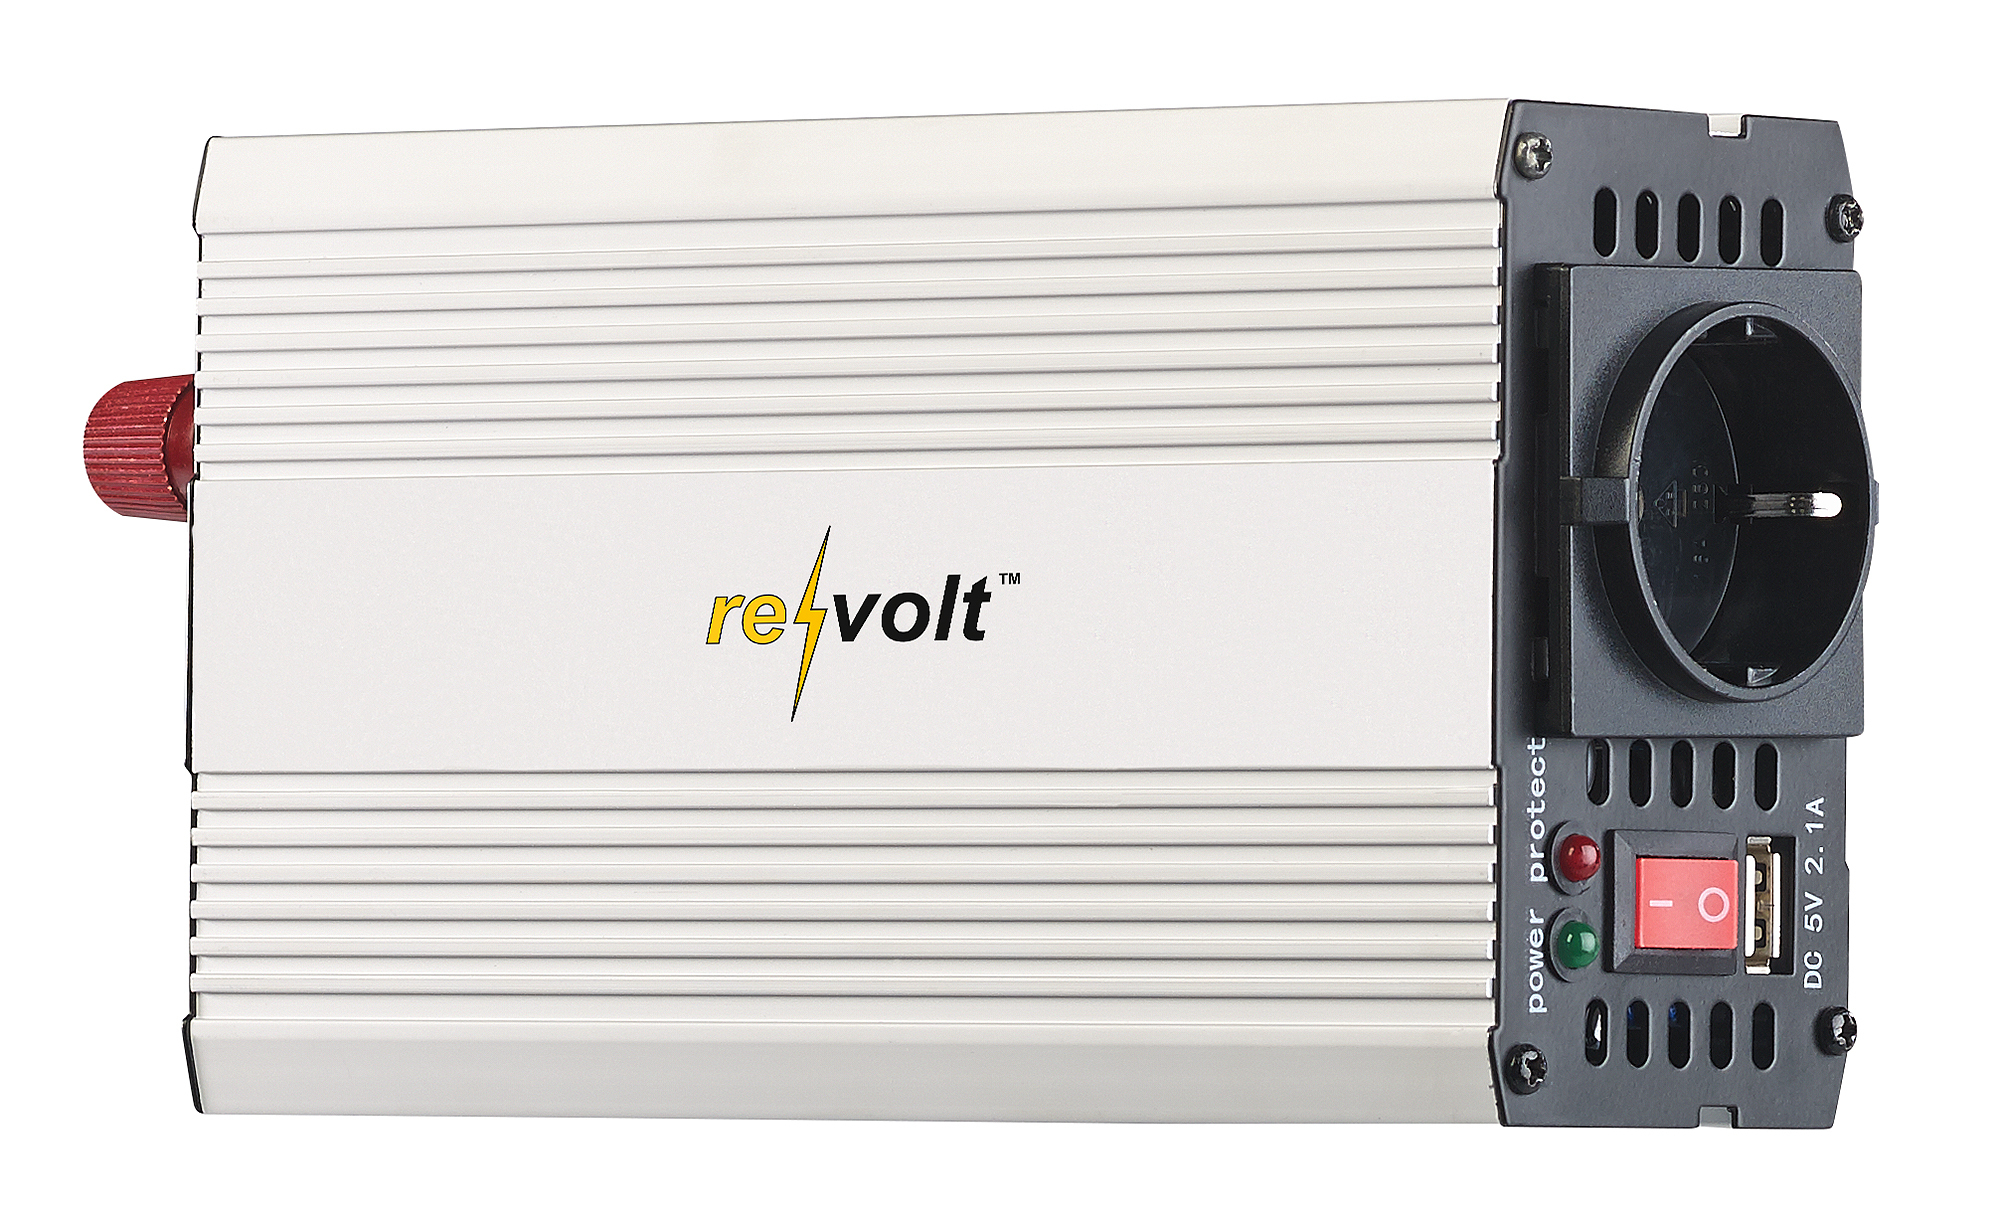 revolt Kfz-Sinus-Spannungswandler 12 Volt auf 230 Volt, USB-Ladeport, 300  Watt, PEARL GmbH, Story - lifePR